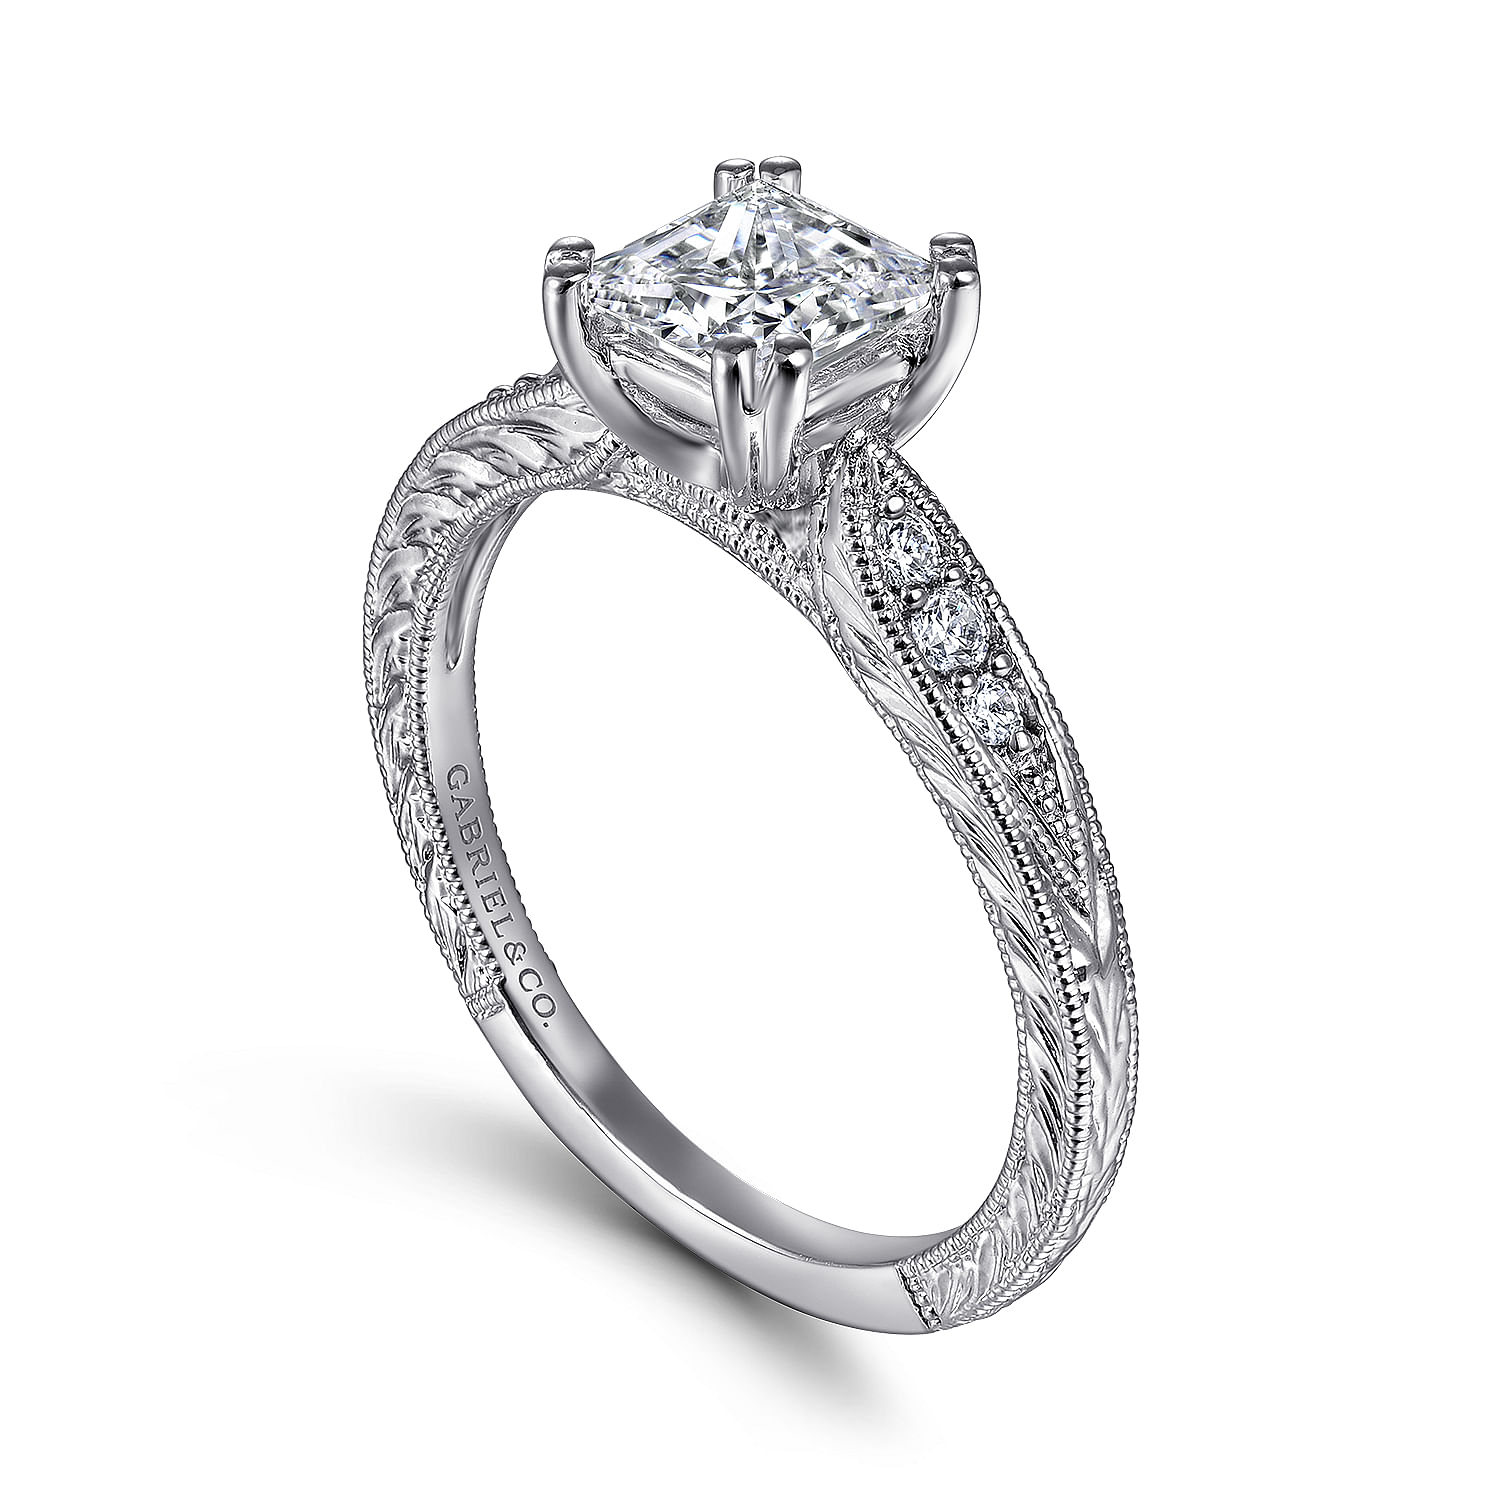 Kate - Vintage Inspired 14K White Gold Princess Cut Diamond Engagement Ring - 0.09 ct - Shot 3